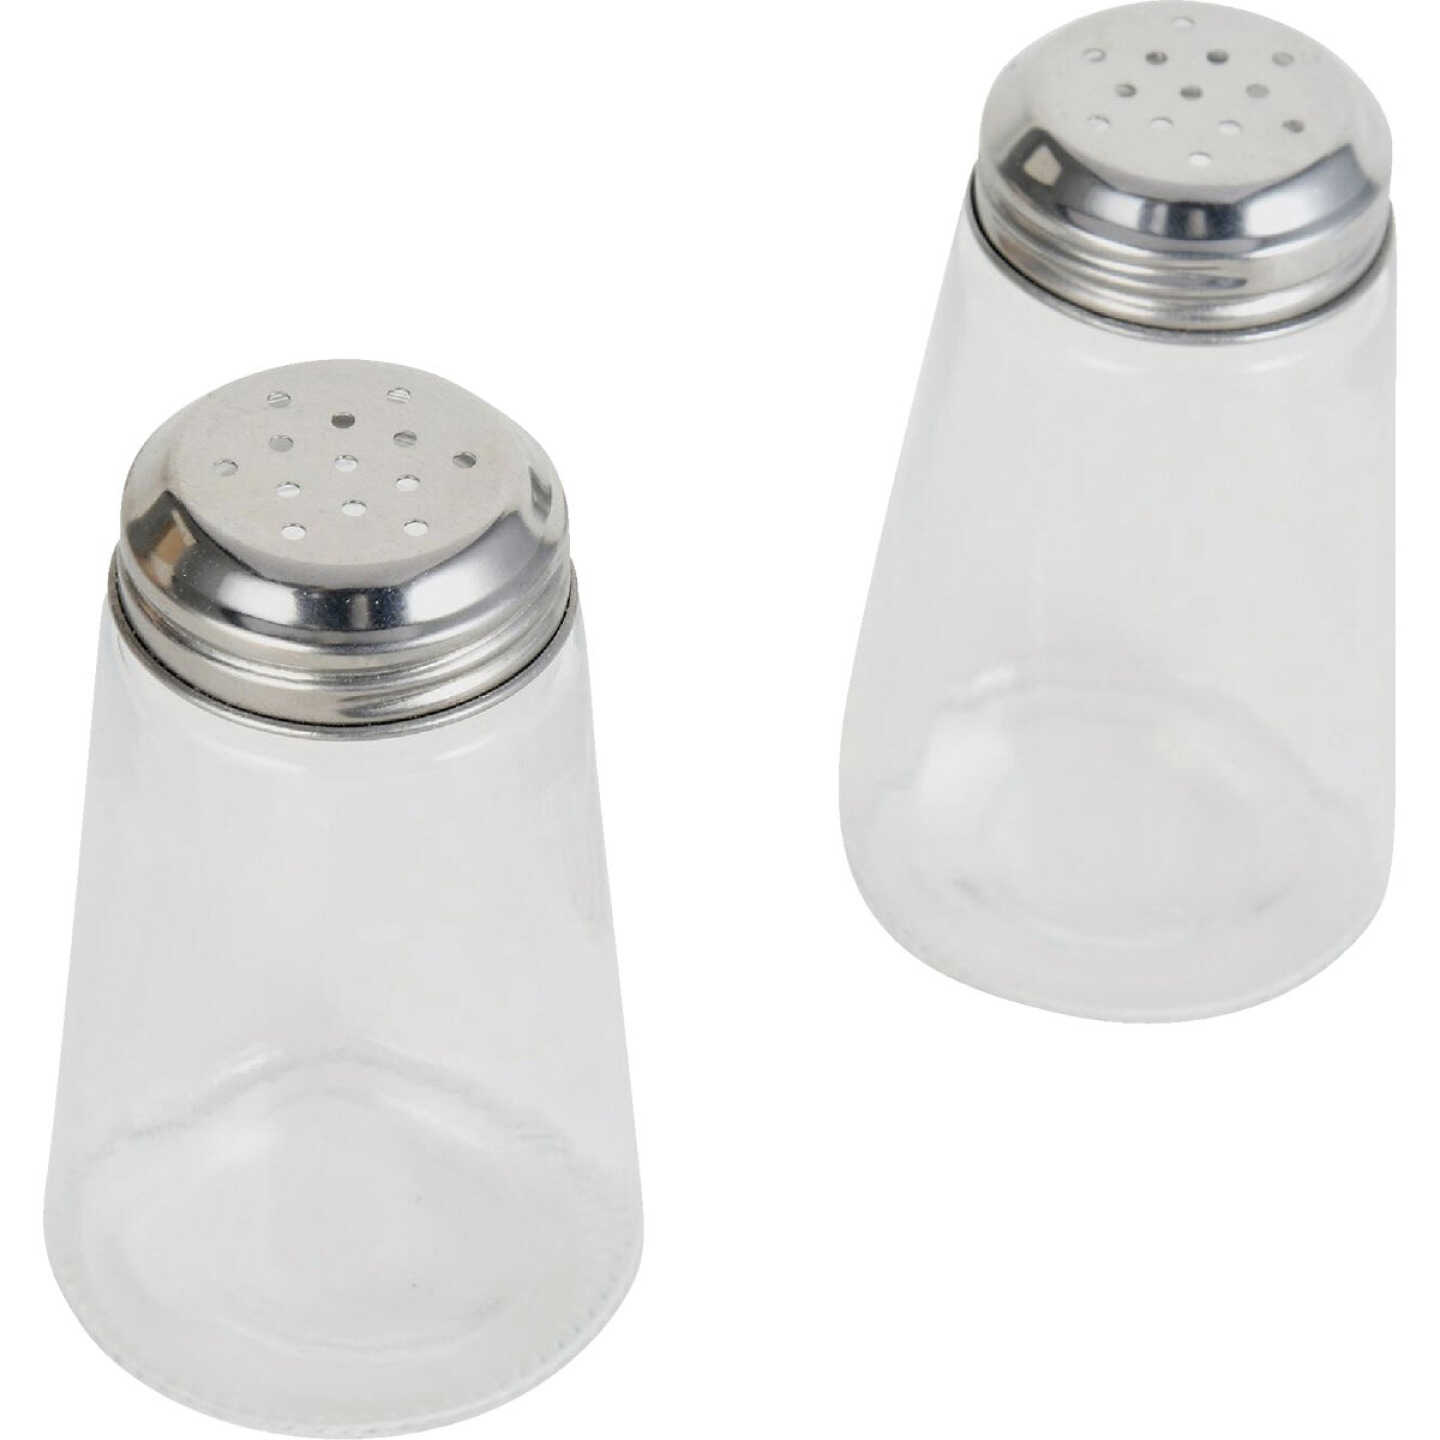 Gemco 3 Oz. Glass Salt & Pepper Shaker Set - Dazey's Supply